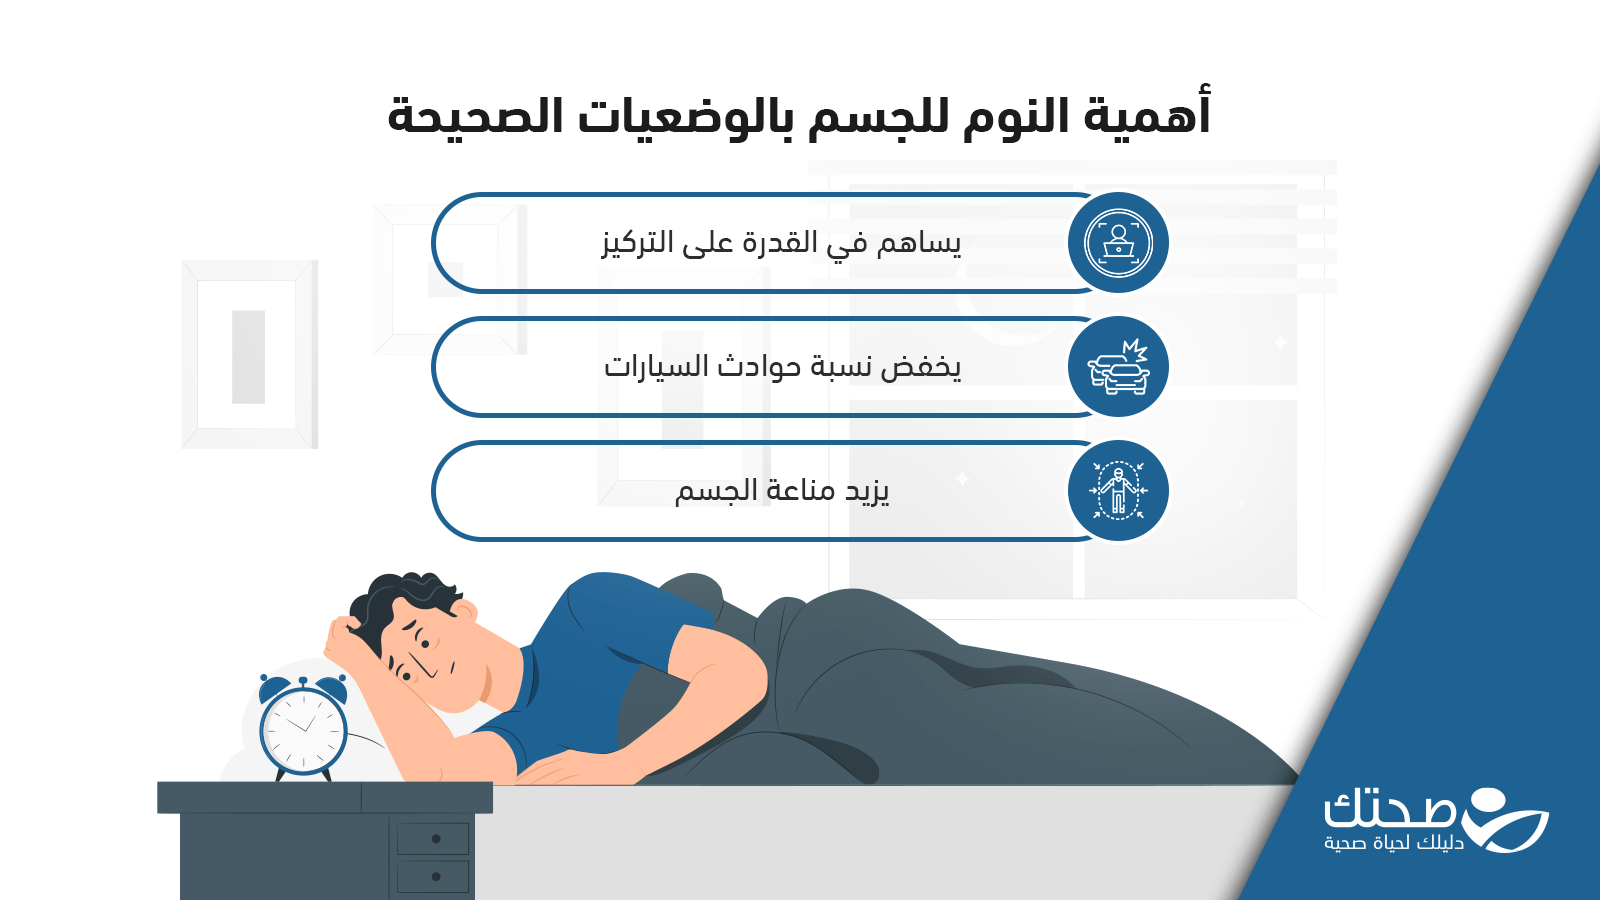 أهمية النوم للجسم